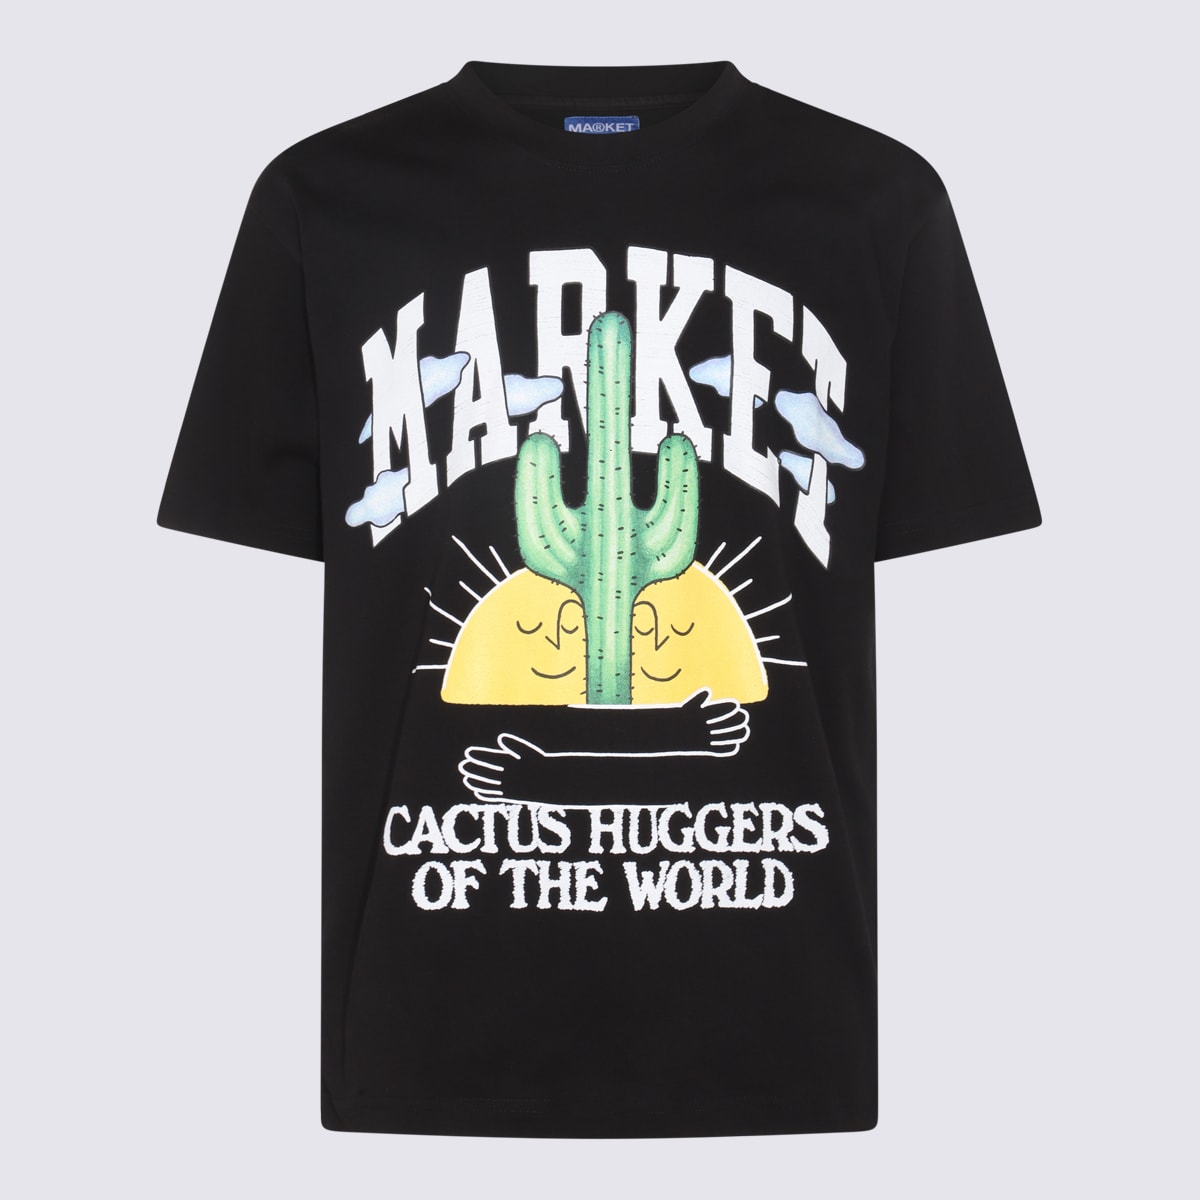 Shop Market Black Cotton Cactus Lover T-shirt